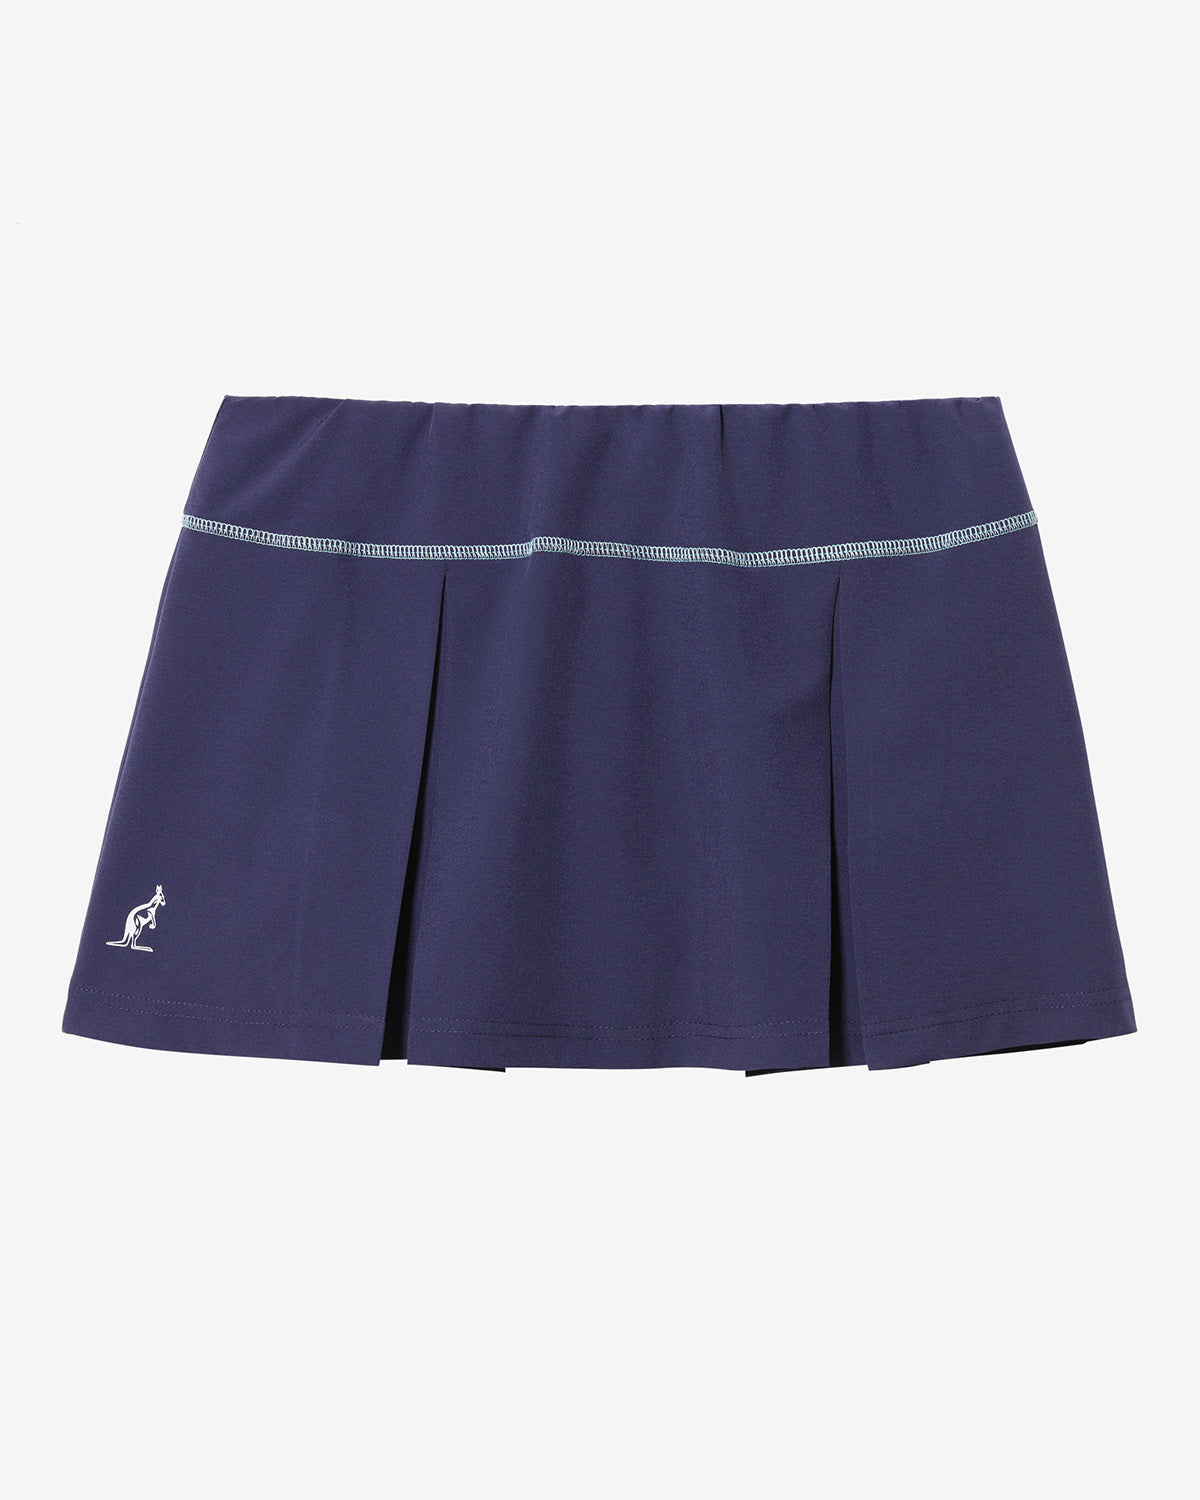 Match Skirt: Australian Tennis